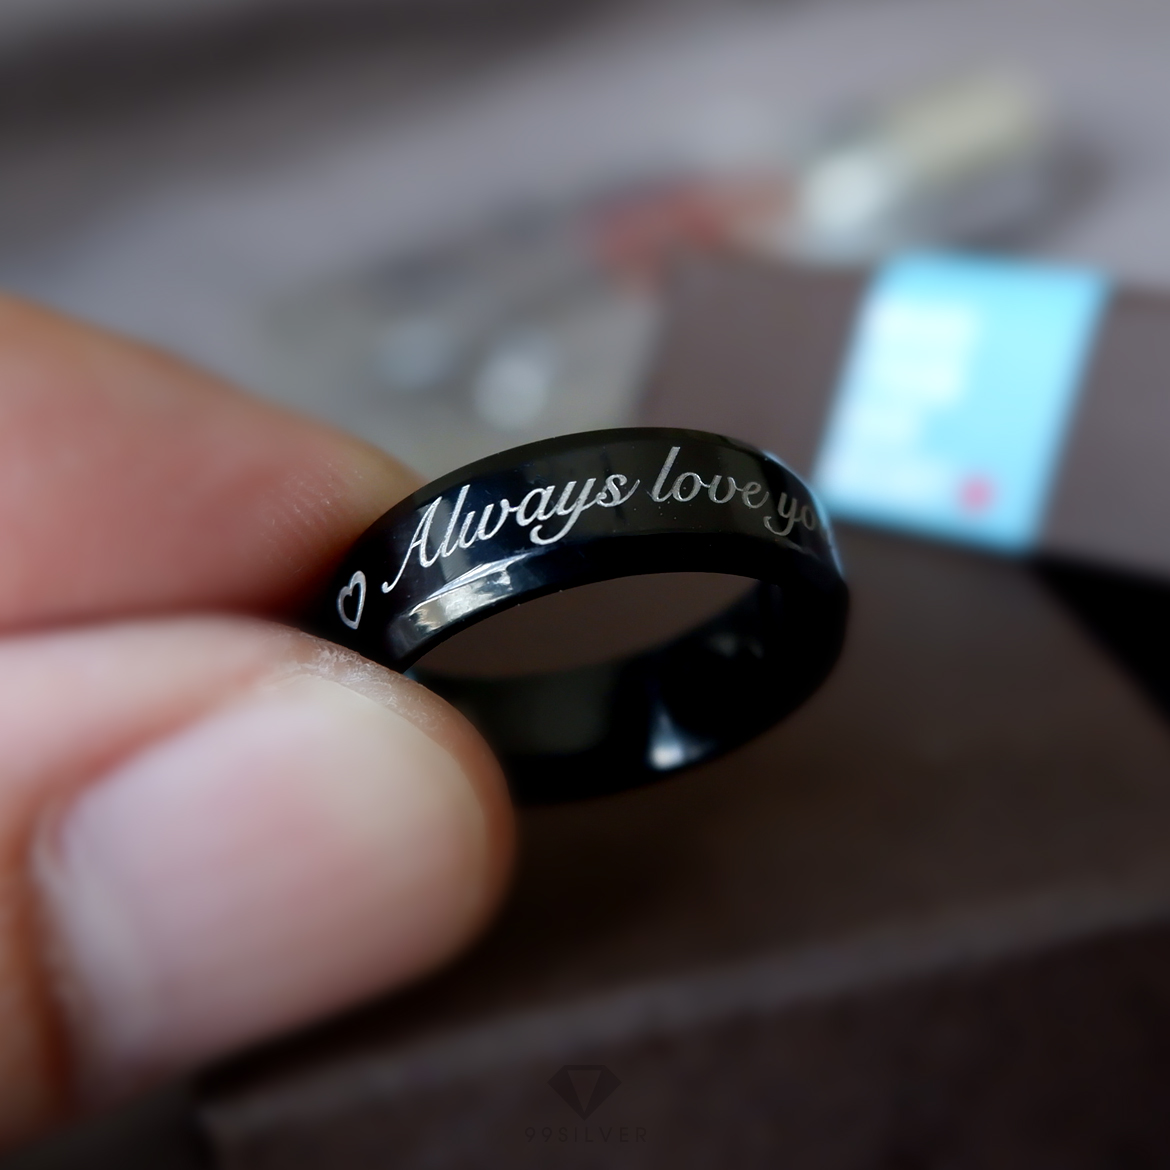 แหวนสแตนเลสแบล๊คไทเทเนี่ยมแท้หน้ากว้าง 6 มิล ขอบมุมตัดสวยงาม ตัวเรือนดำเงา